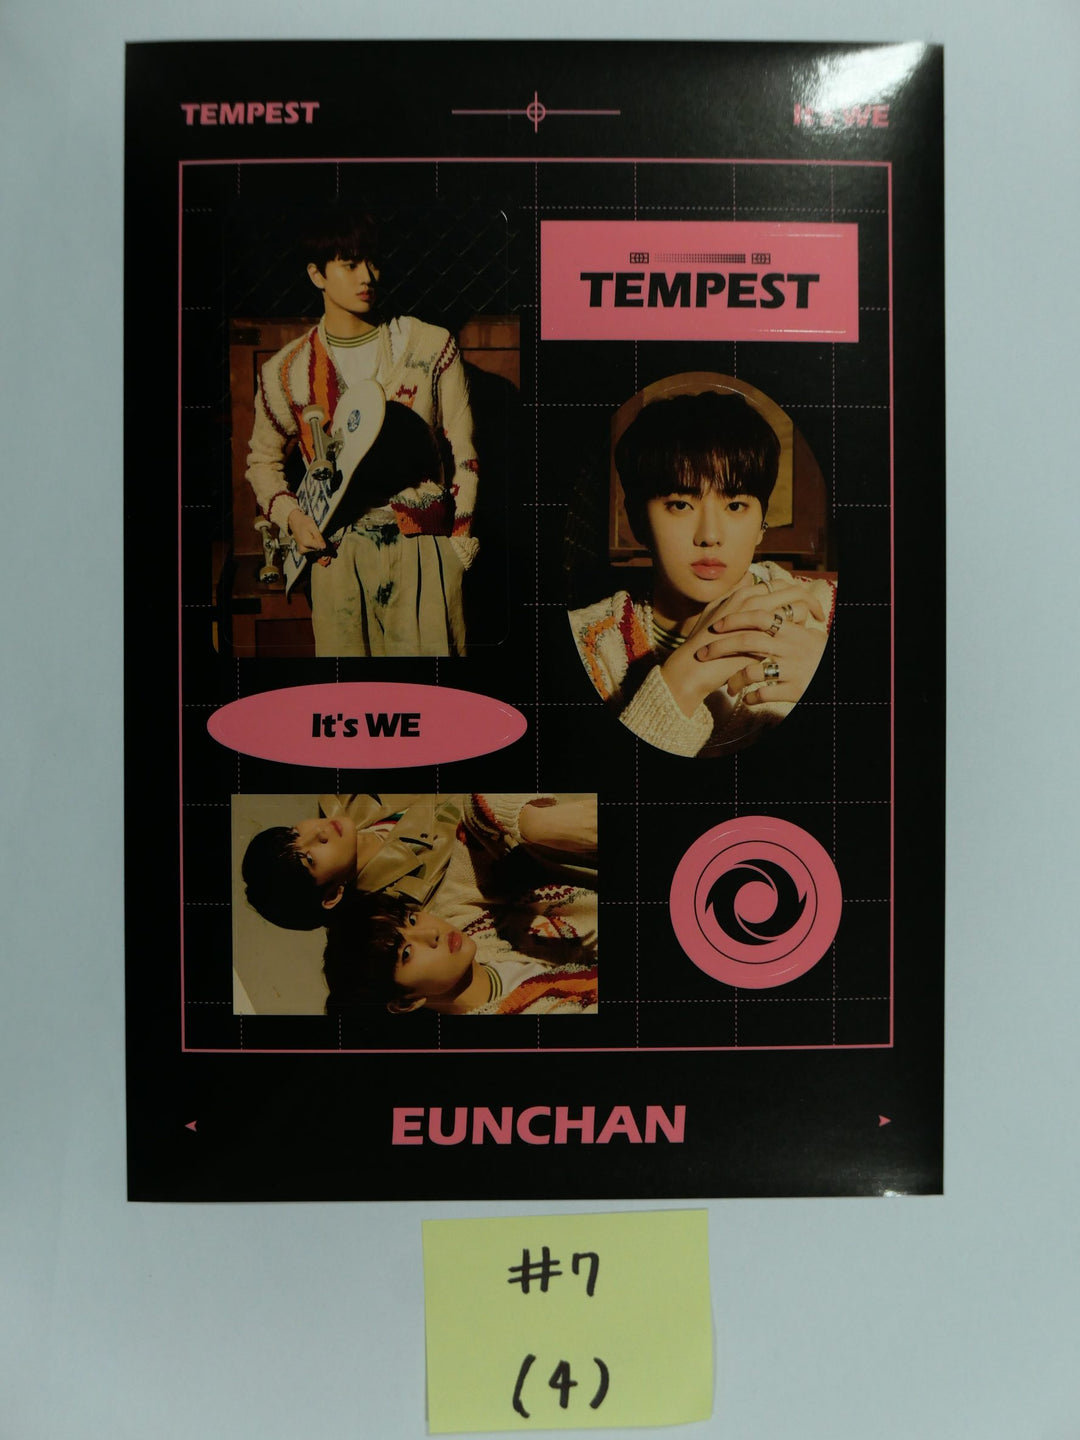 TEMPEST "It's ME" - Official Sticker, Postcard